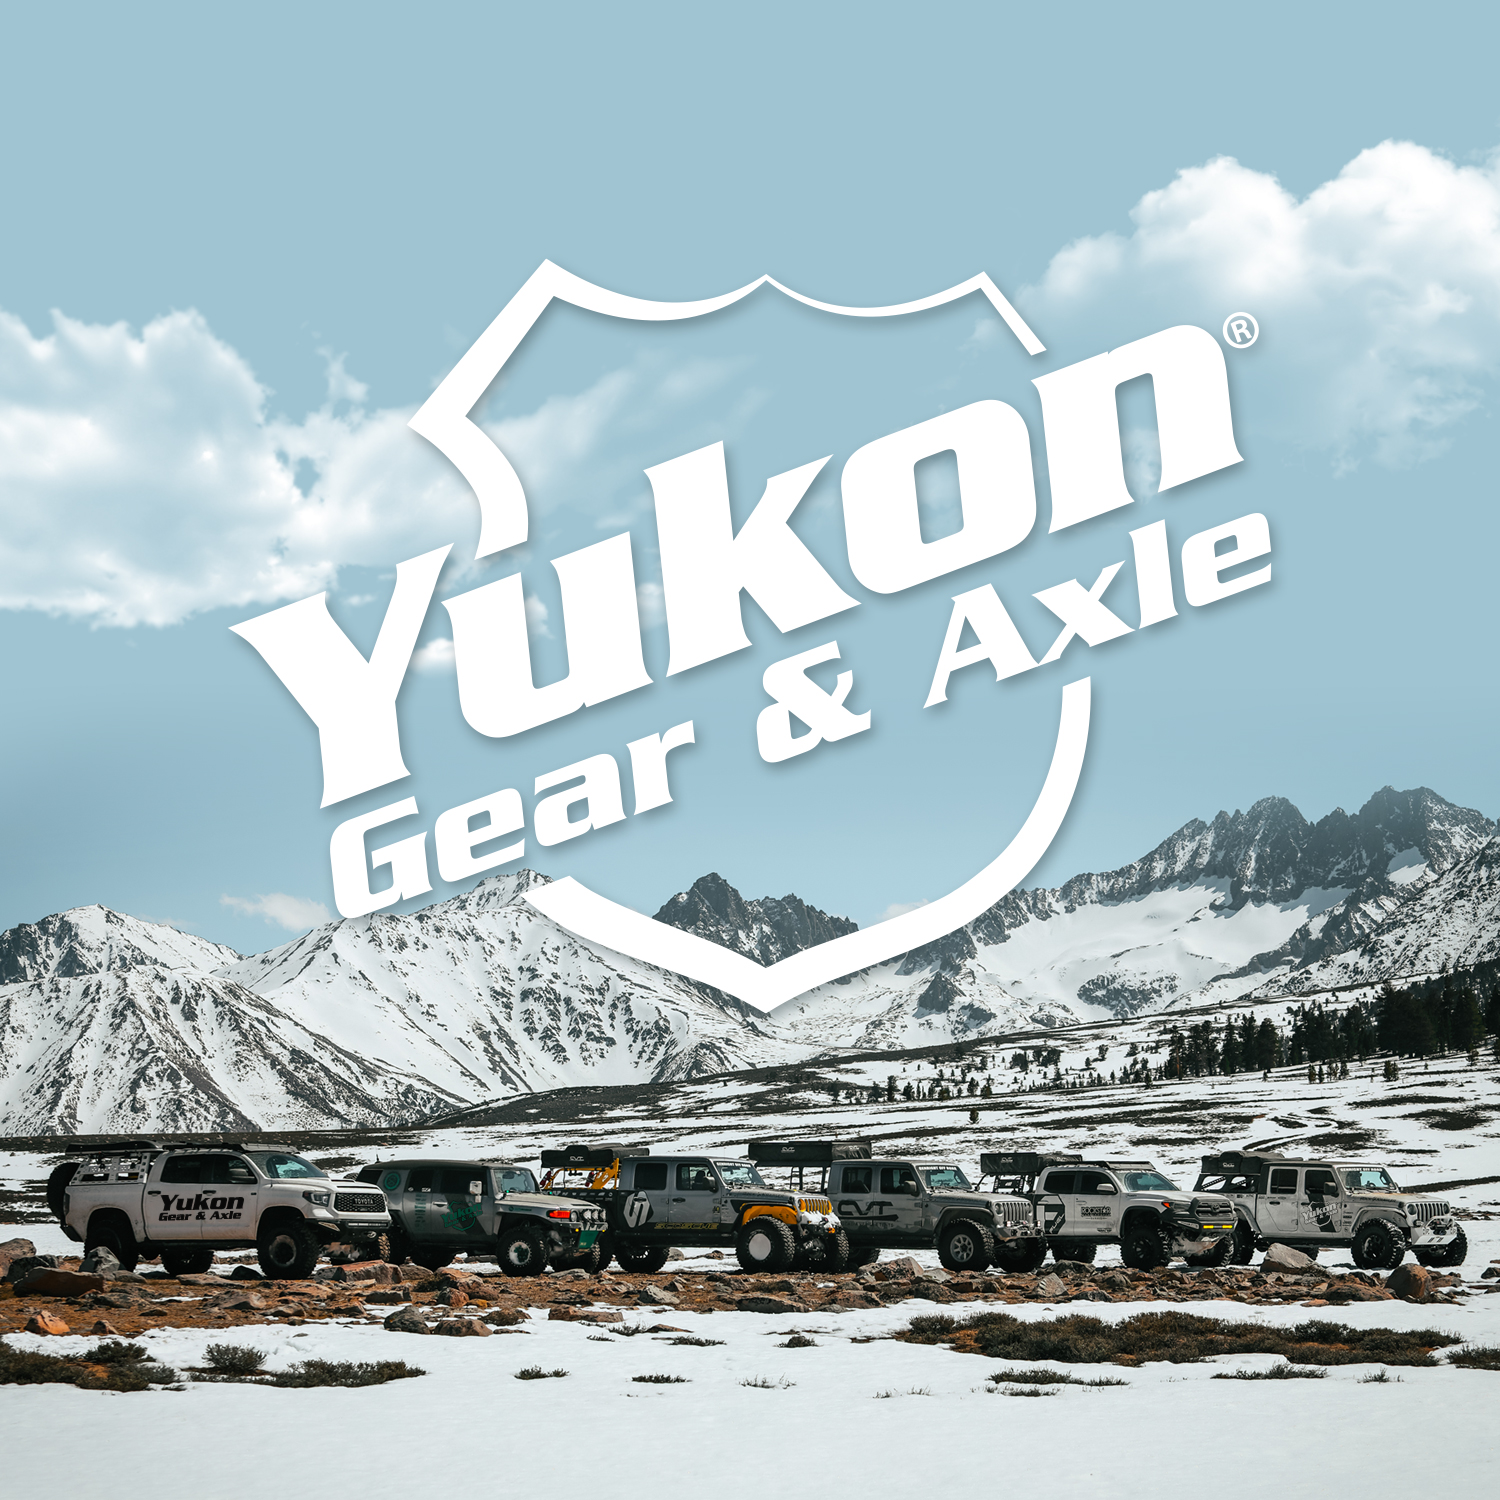 Yukon Master Overhaul kit for '87-'97 Toyota Landcruiser